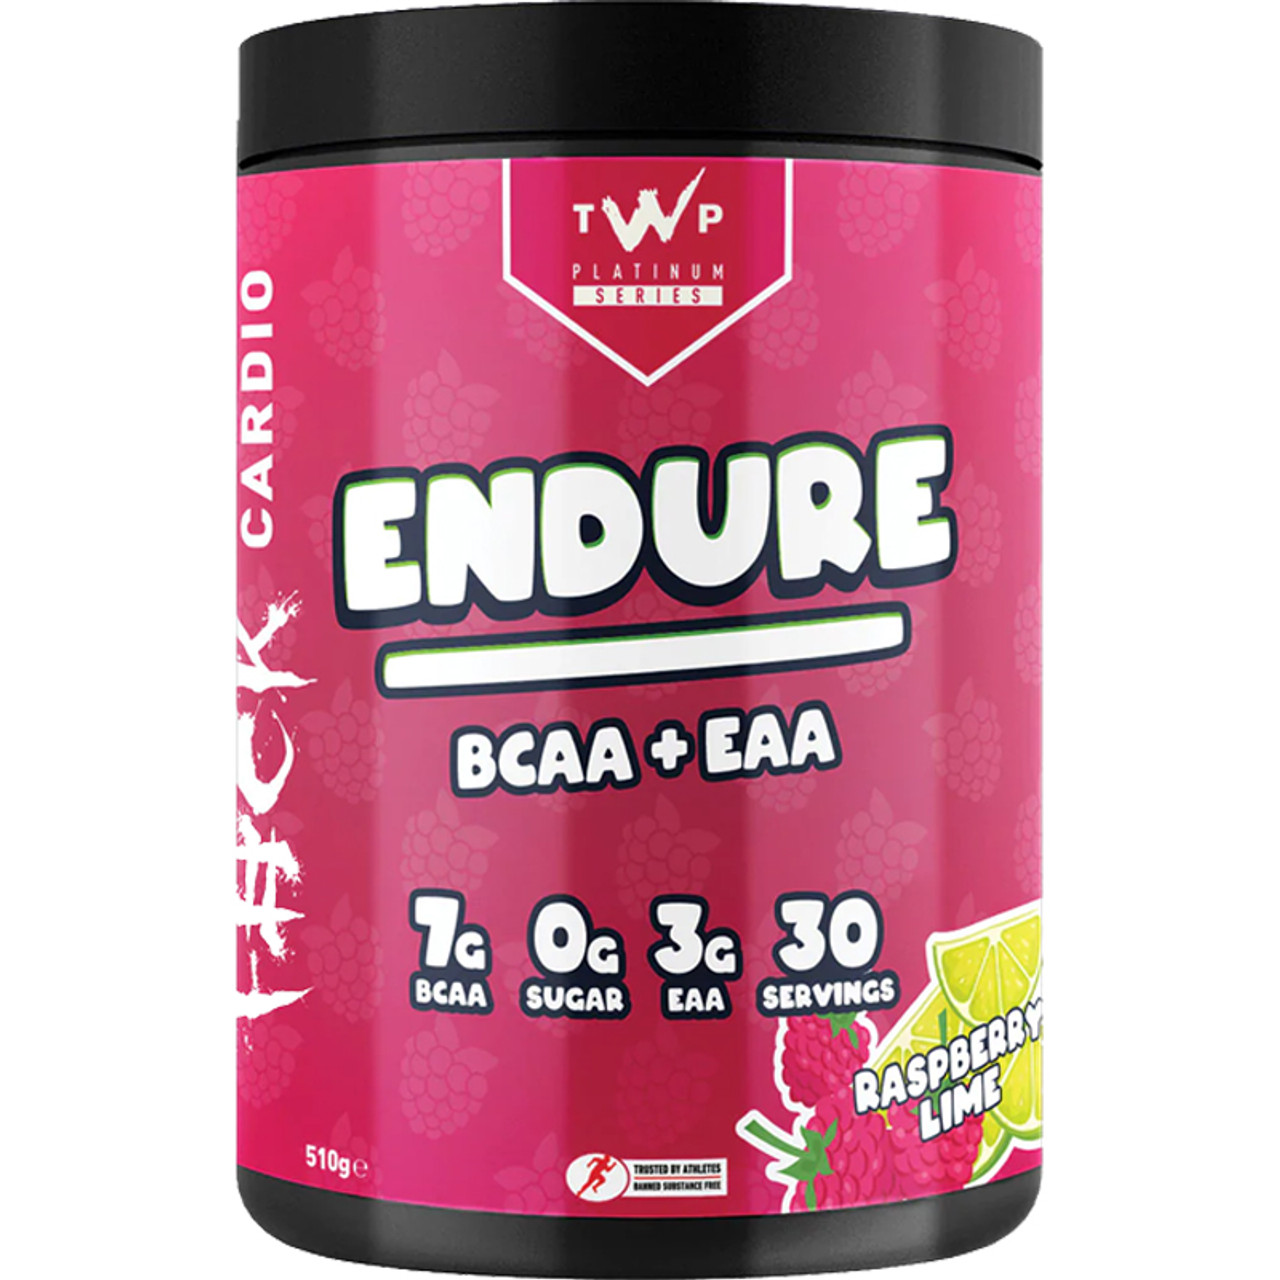 TWP- Endure Platinum Series BCAA + EAA